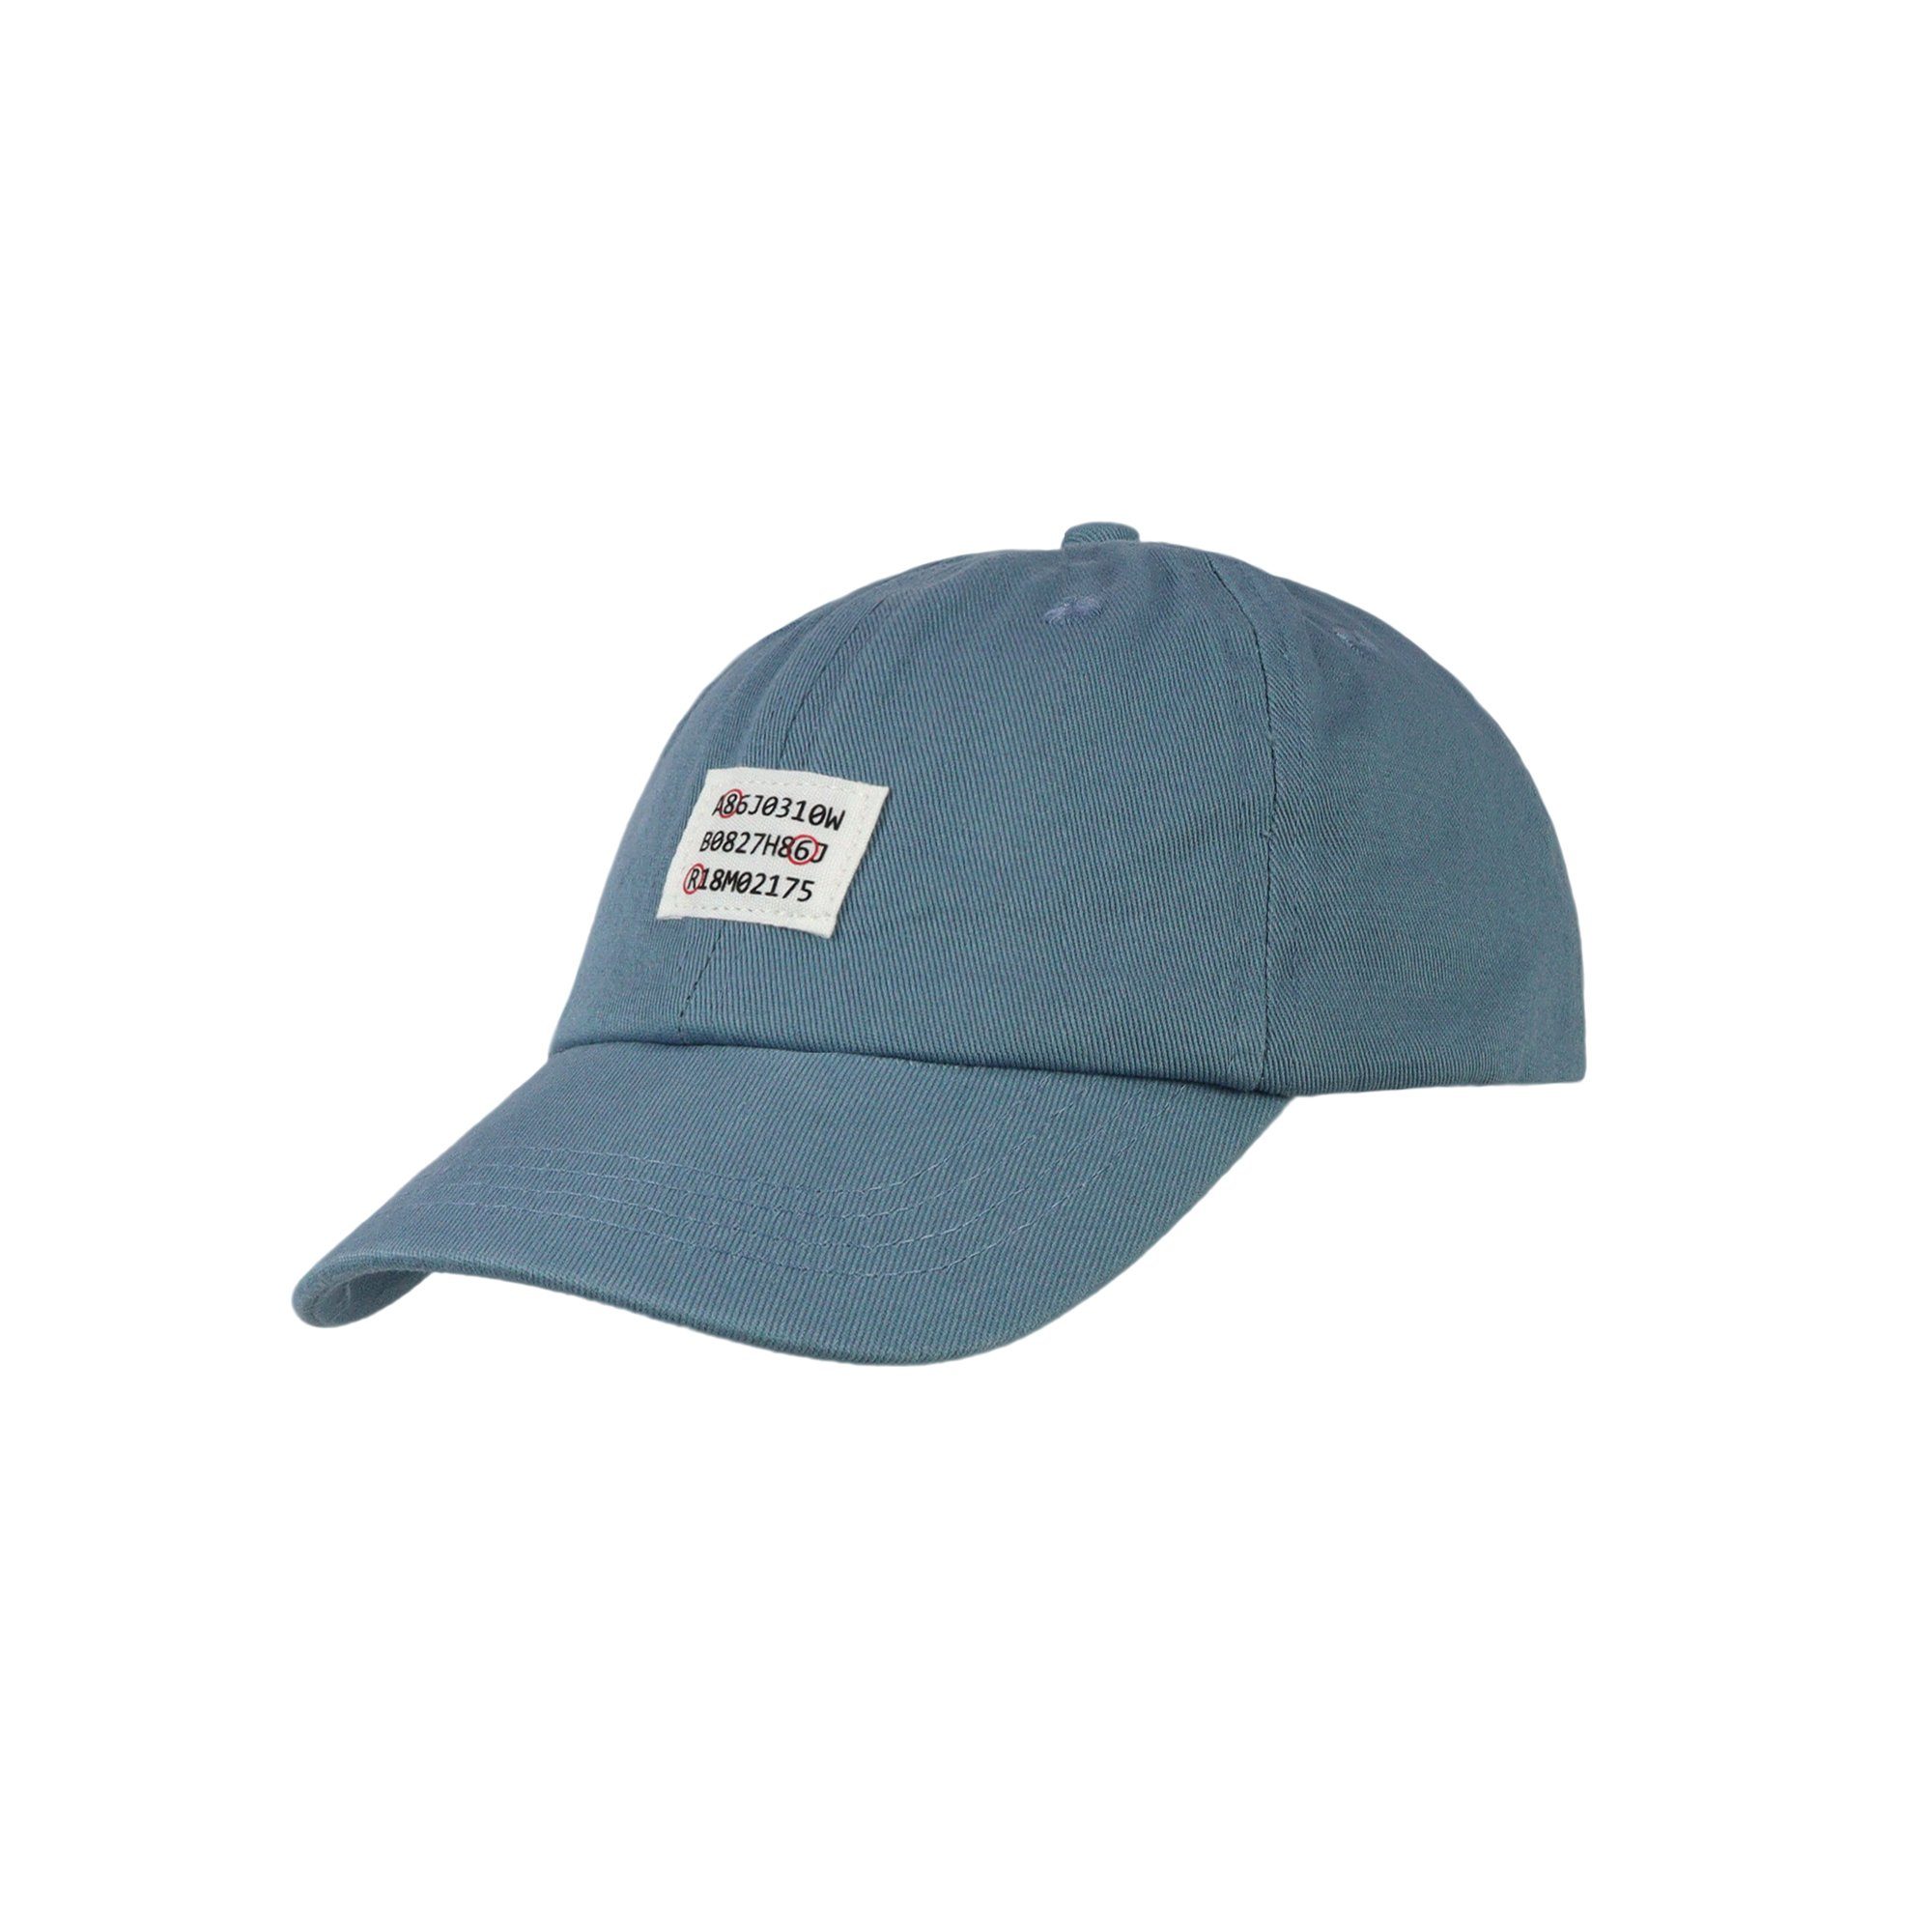 ZEBRO Baseball Cap Cap blau